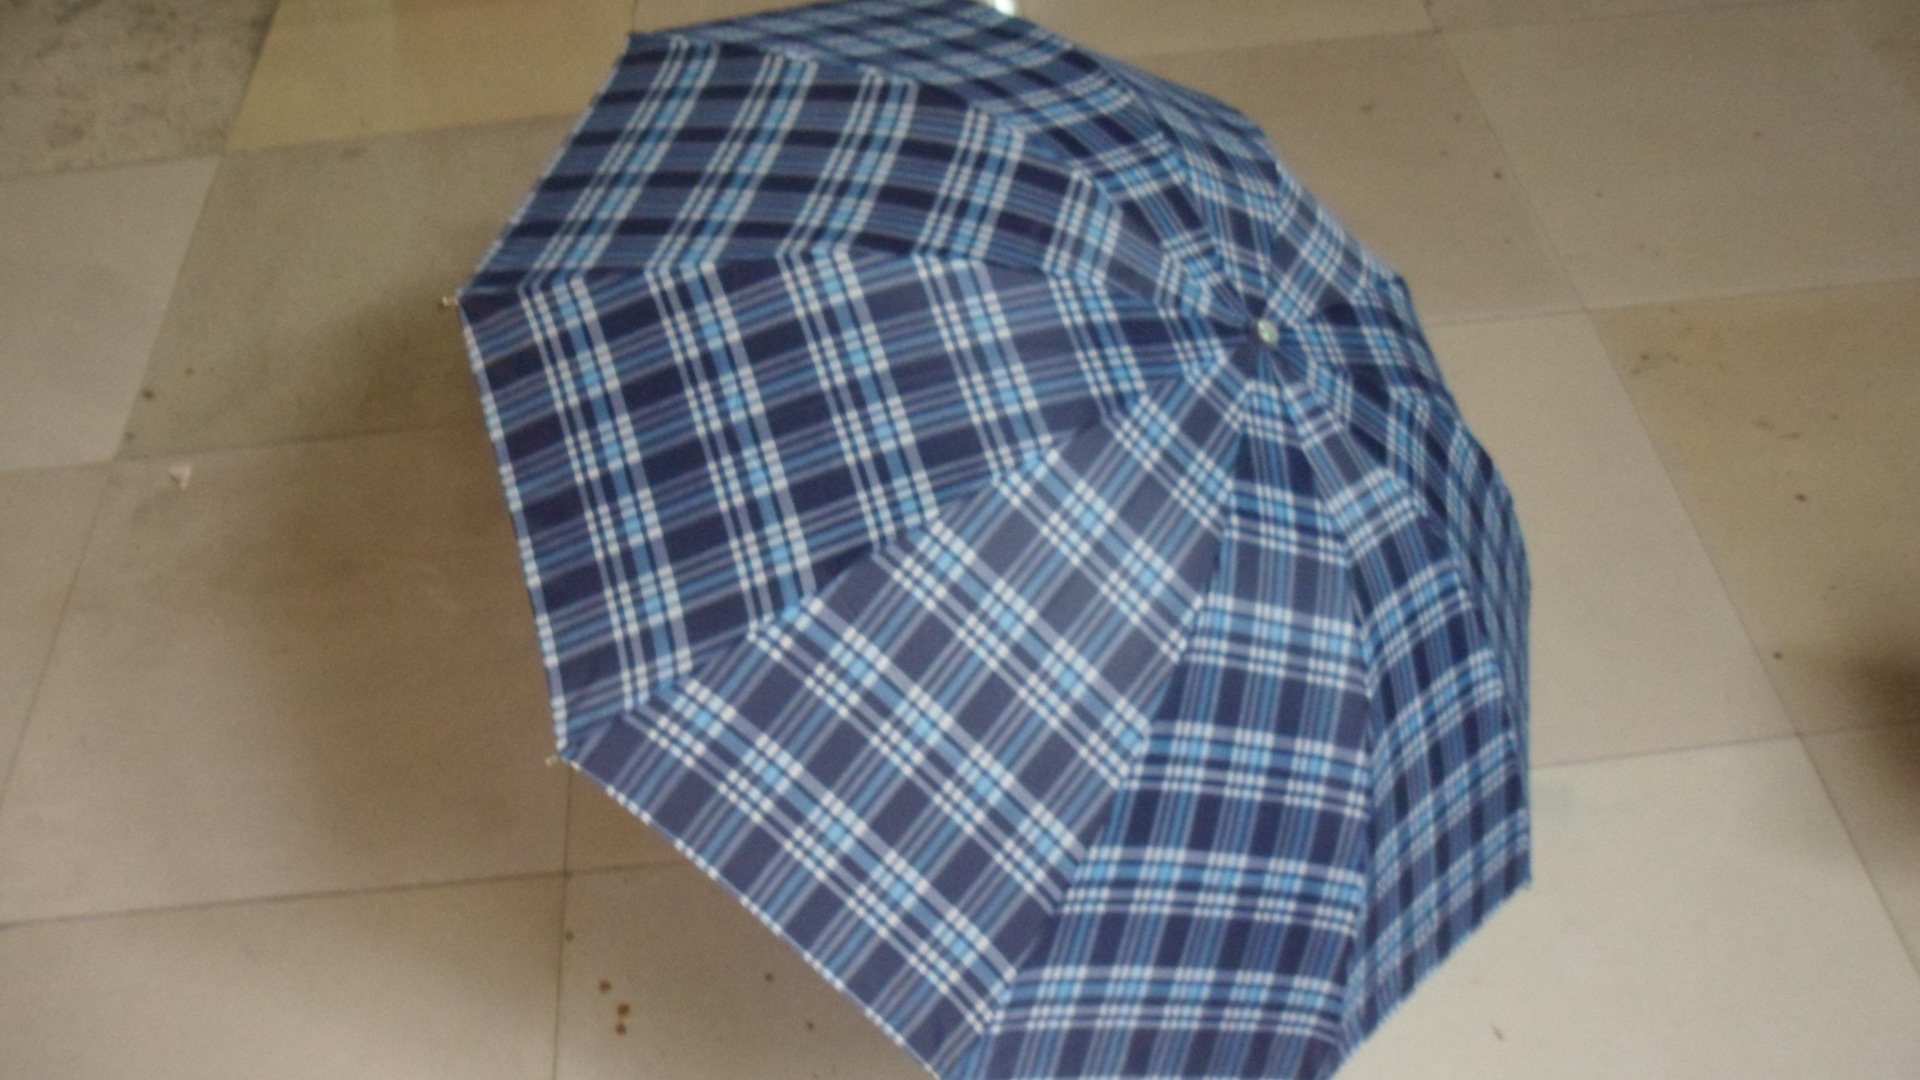 蕭山雨傘廠供應優質三折晴雨傘 新款10K滌絲格子雨傘低價批發 SAM_1531